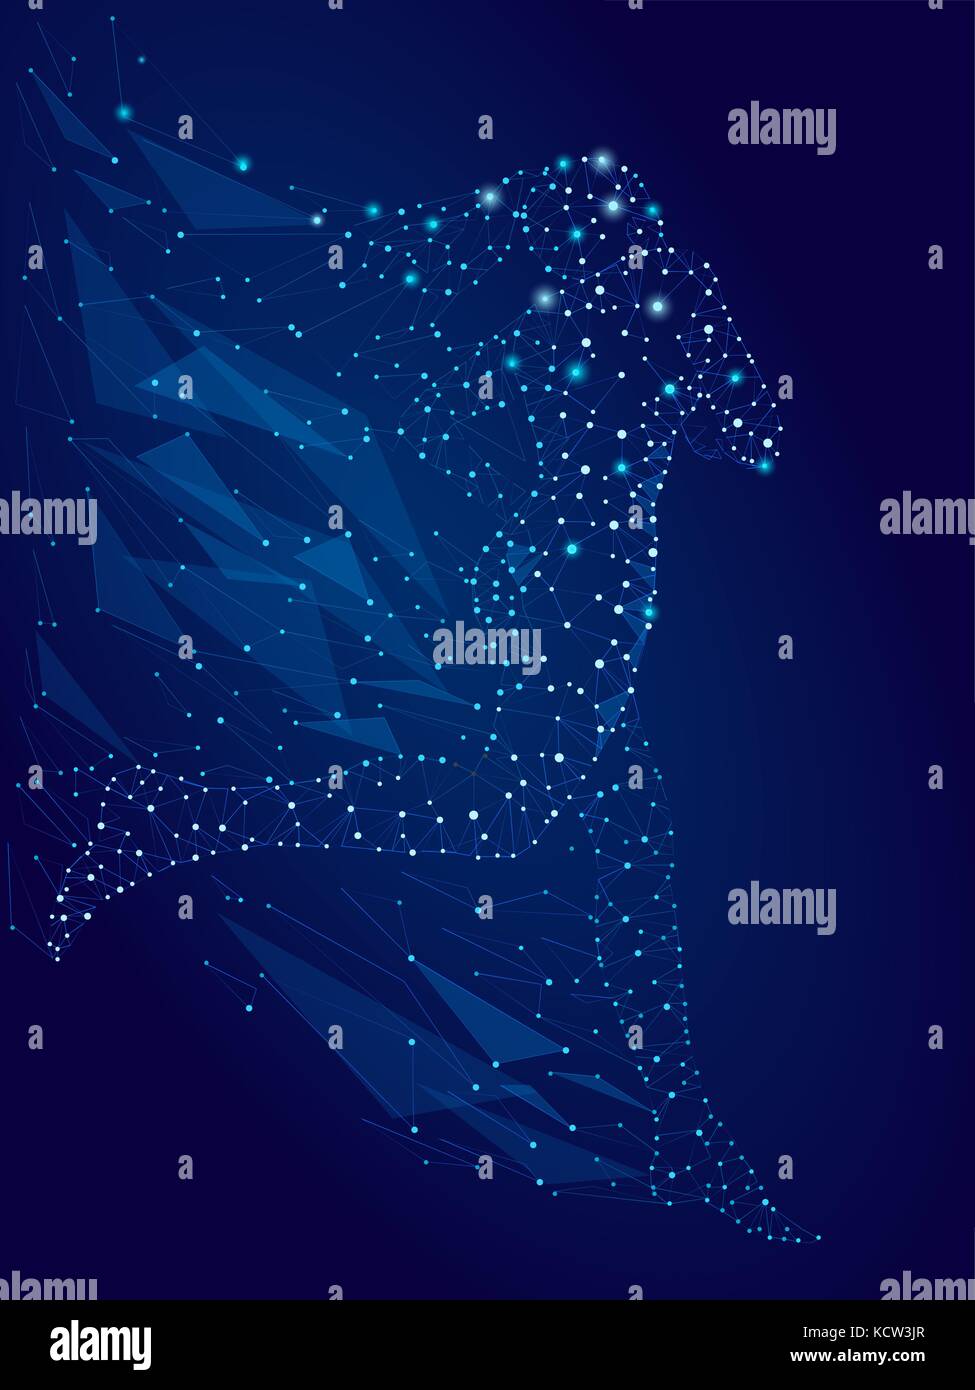 Brillantes Bild von Punkten, Linien und Glanz auf blauem Hintergrund, eine Frau, die aus Sternen. Vector Illustration Stock Vektor